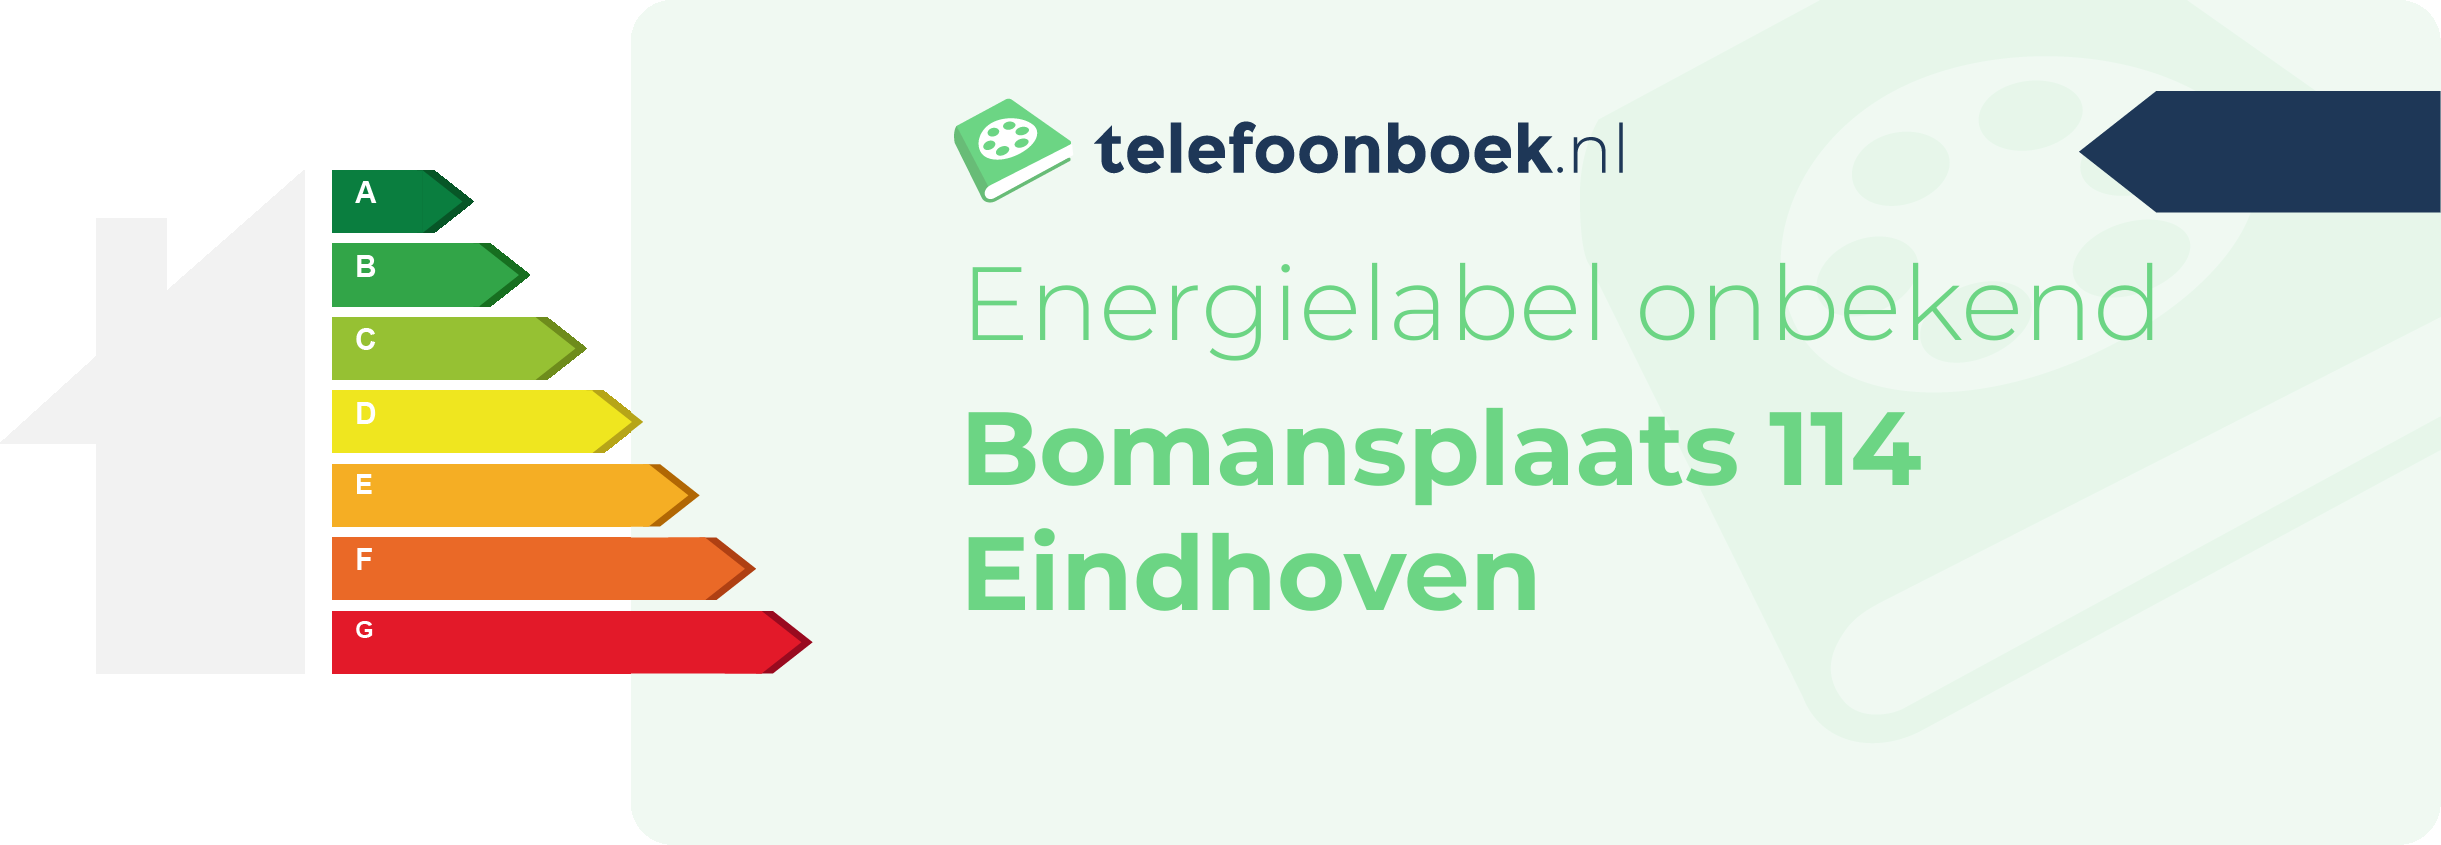 Energielabel Bomansplaats 114 Eindhoven